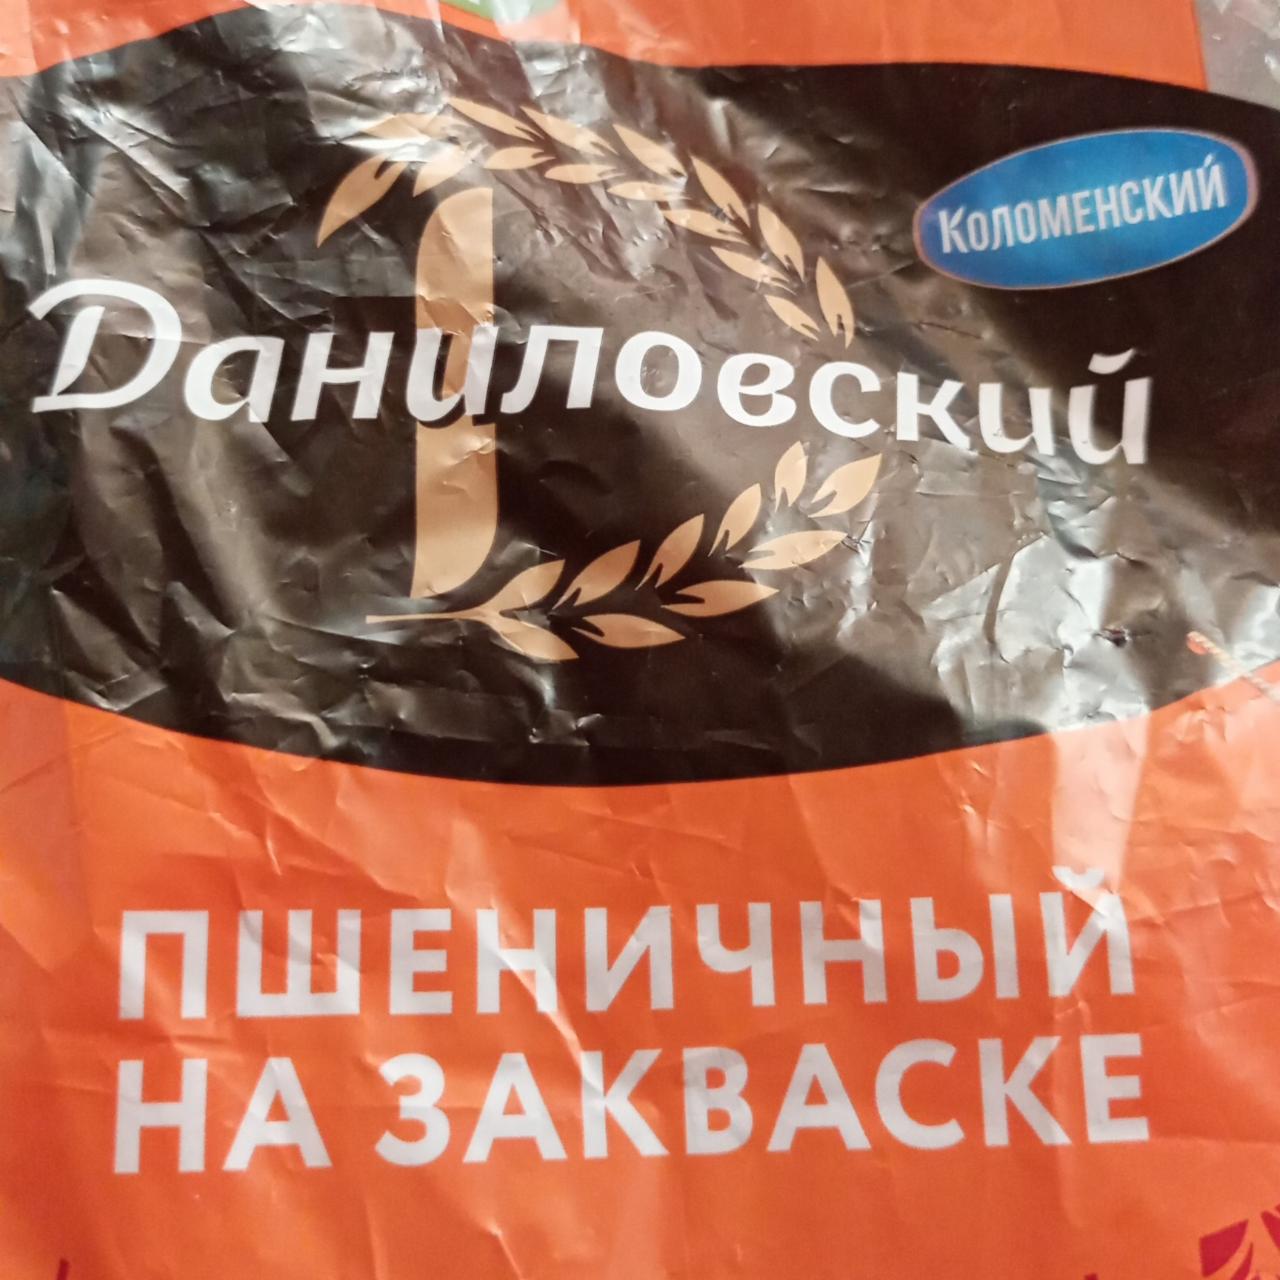 Фото - Хлеб пшеничный на закваске Данилоский Коломенский